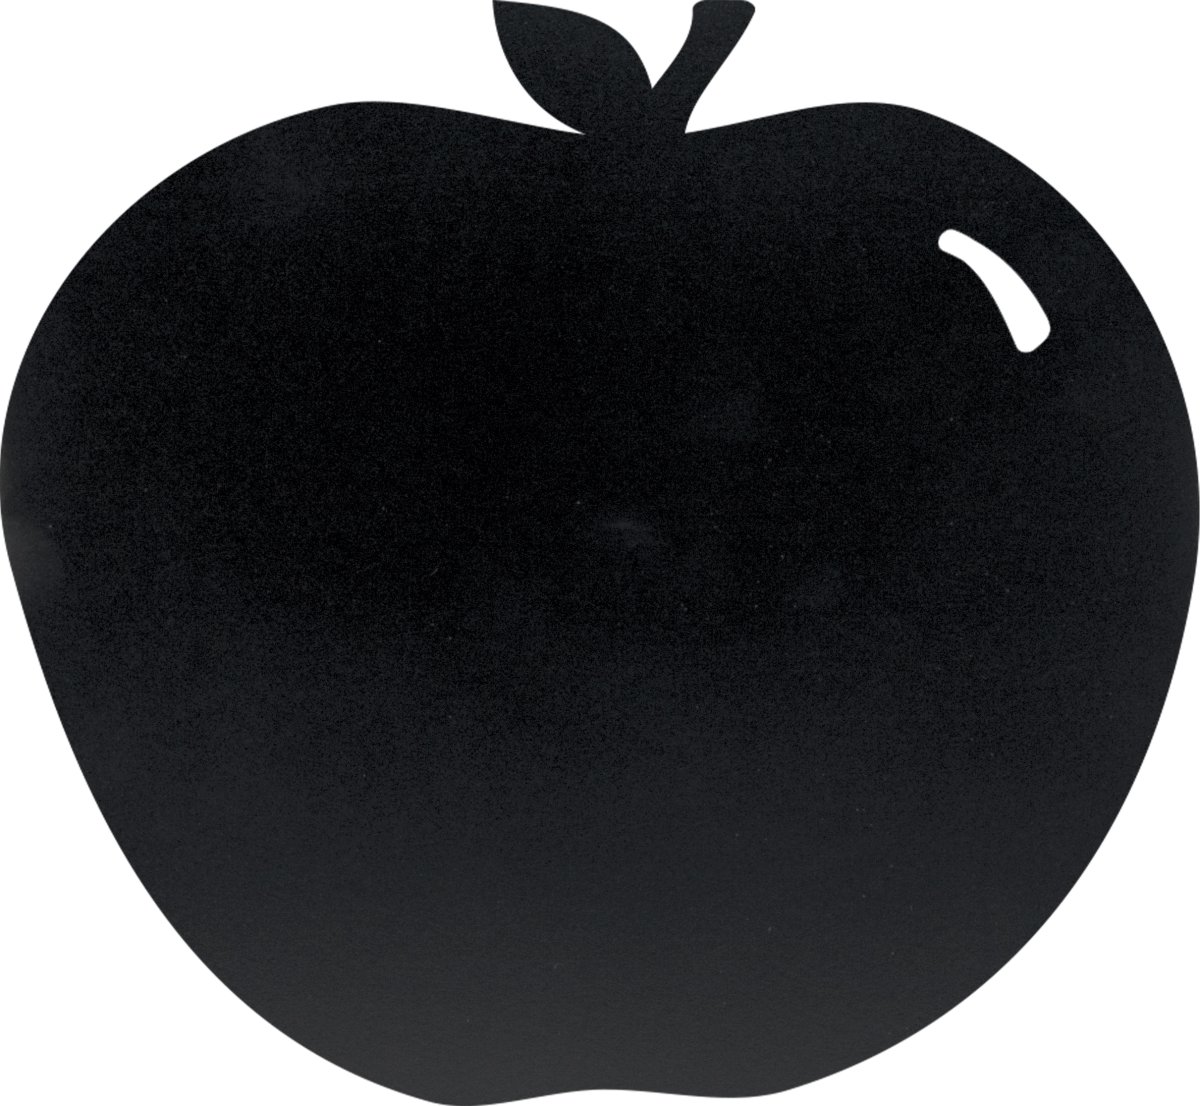 Securit Silhouette Apple Griffeltavla